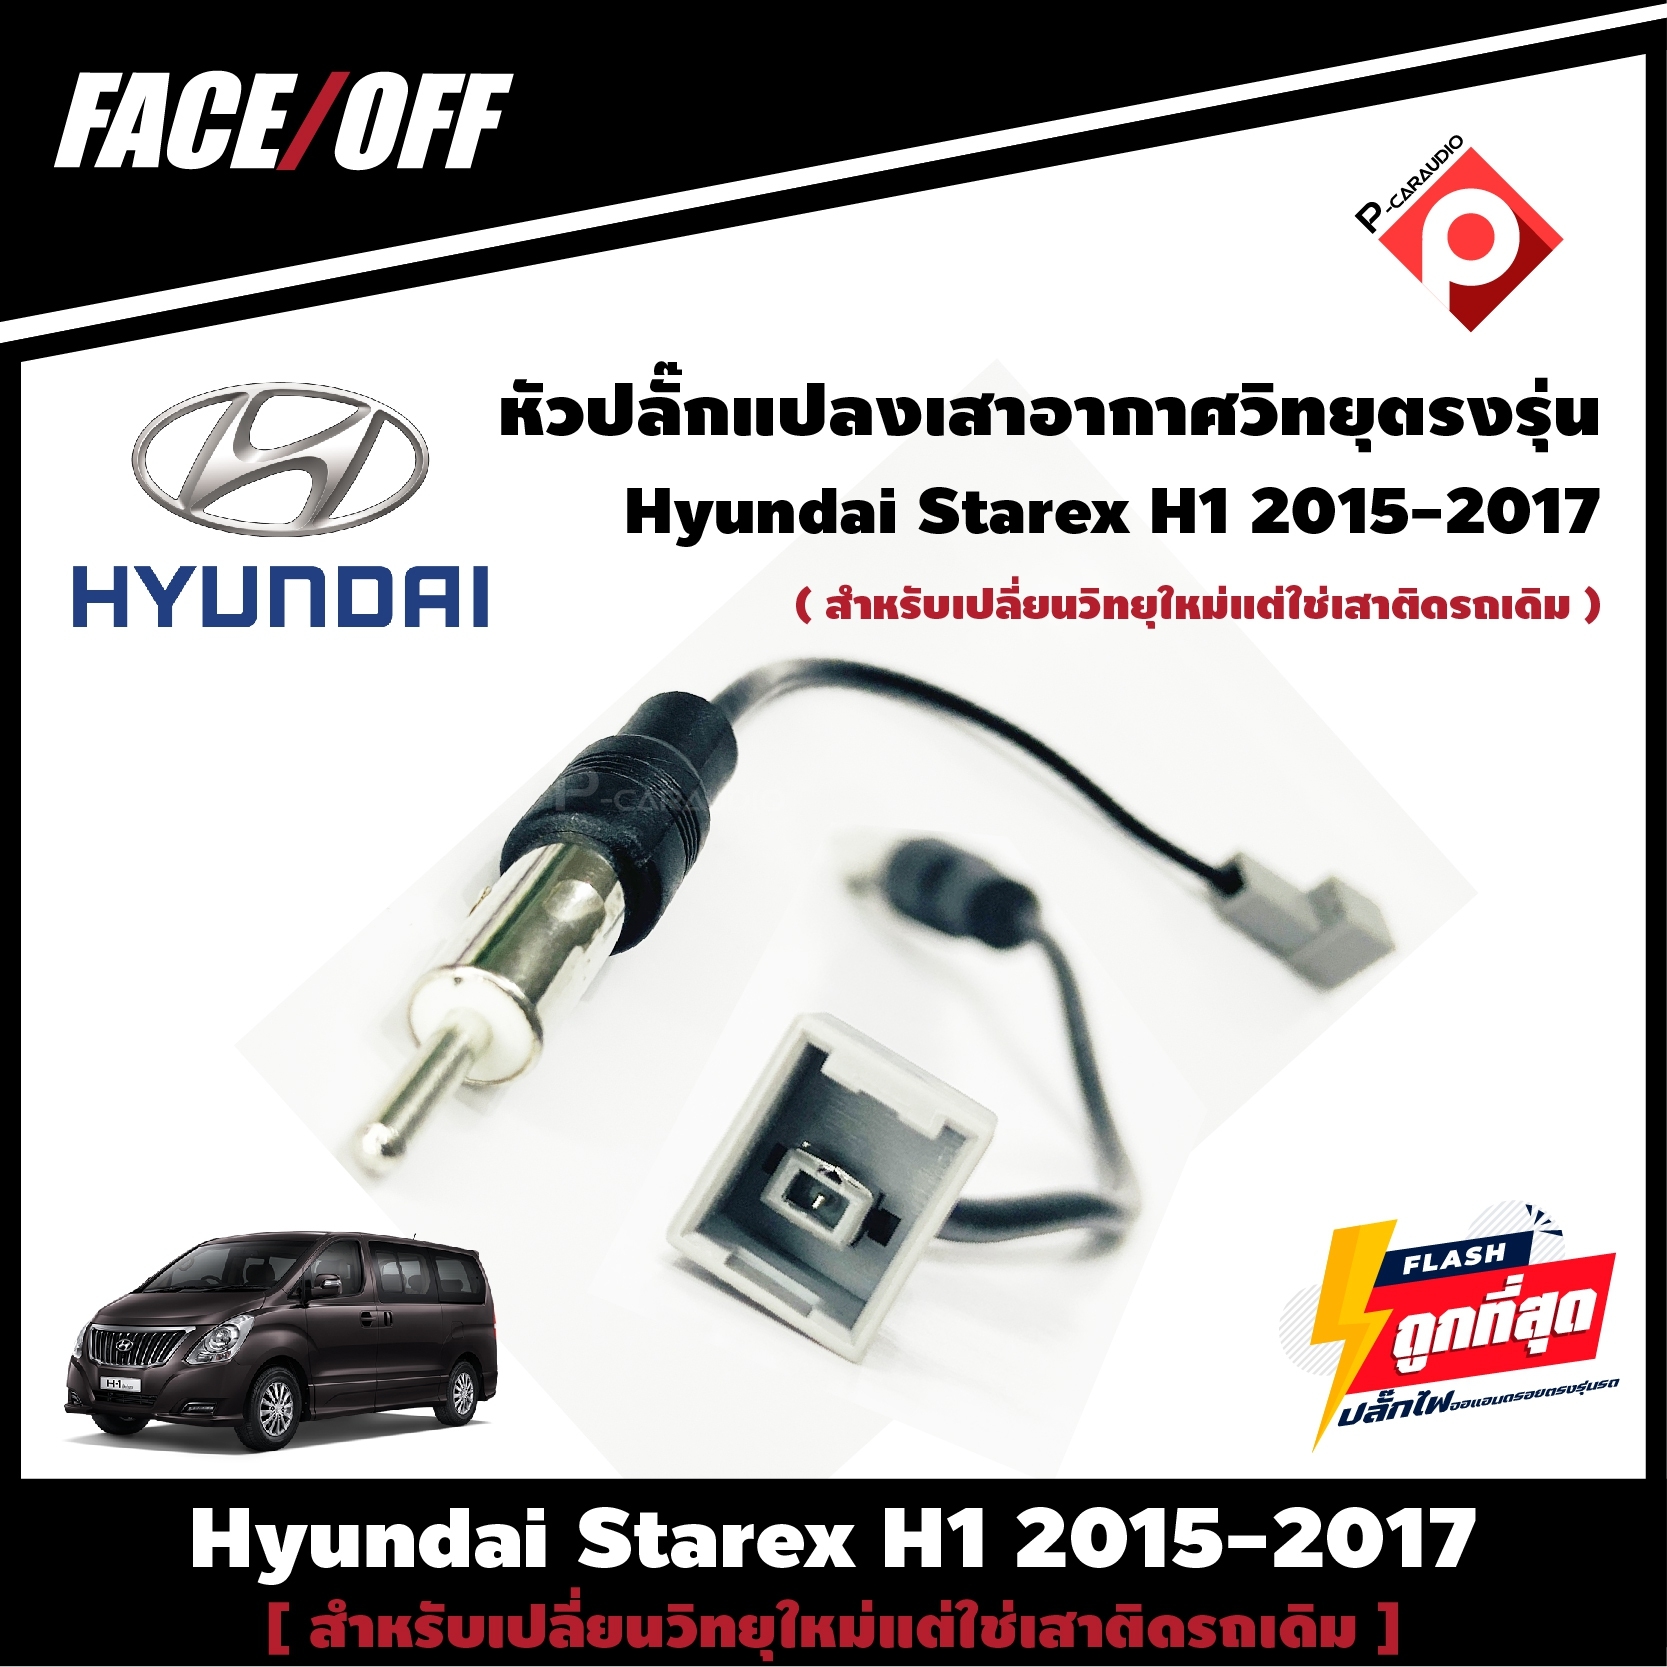 หัวปลั๊กแปลงเสาอากาศวิทยุตรงรุ่น ปลั๊ก Fm Hyundai Starex H1 2015-2017 สำหรับเปลี่ยนวิทยุใหม่ และจอแอนดรอย แต่ใช่เสาติดรถเดิม